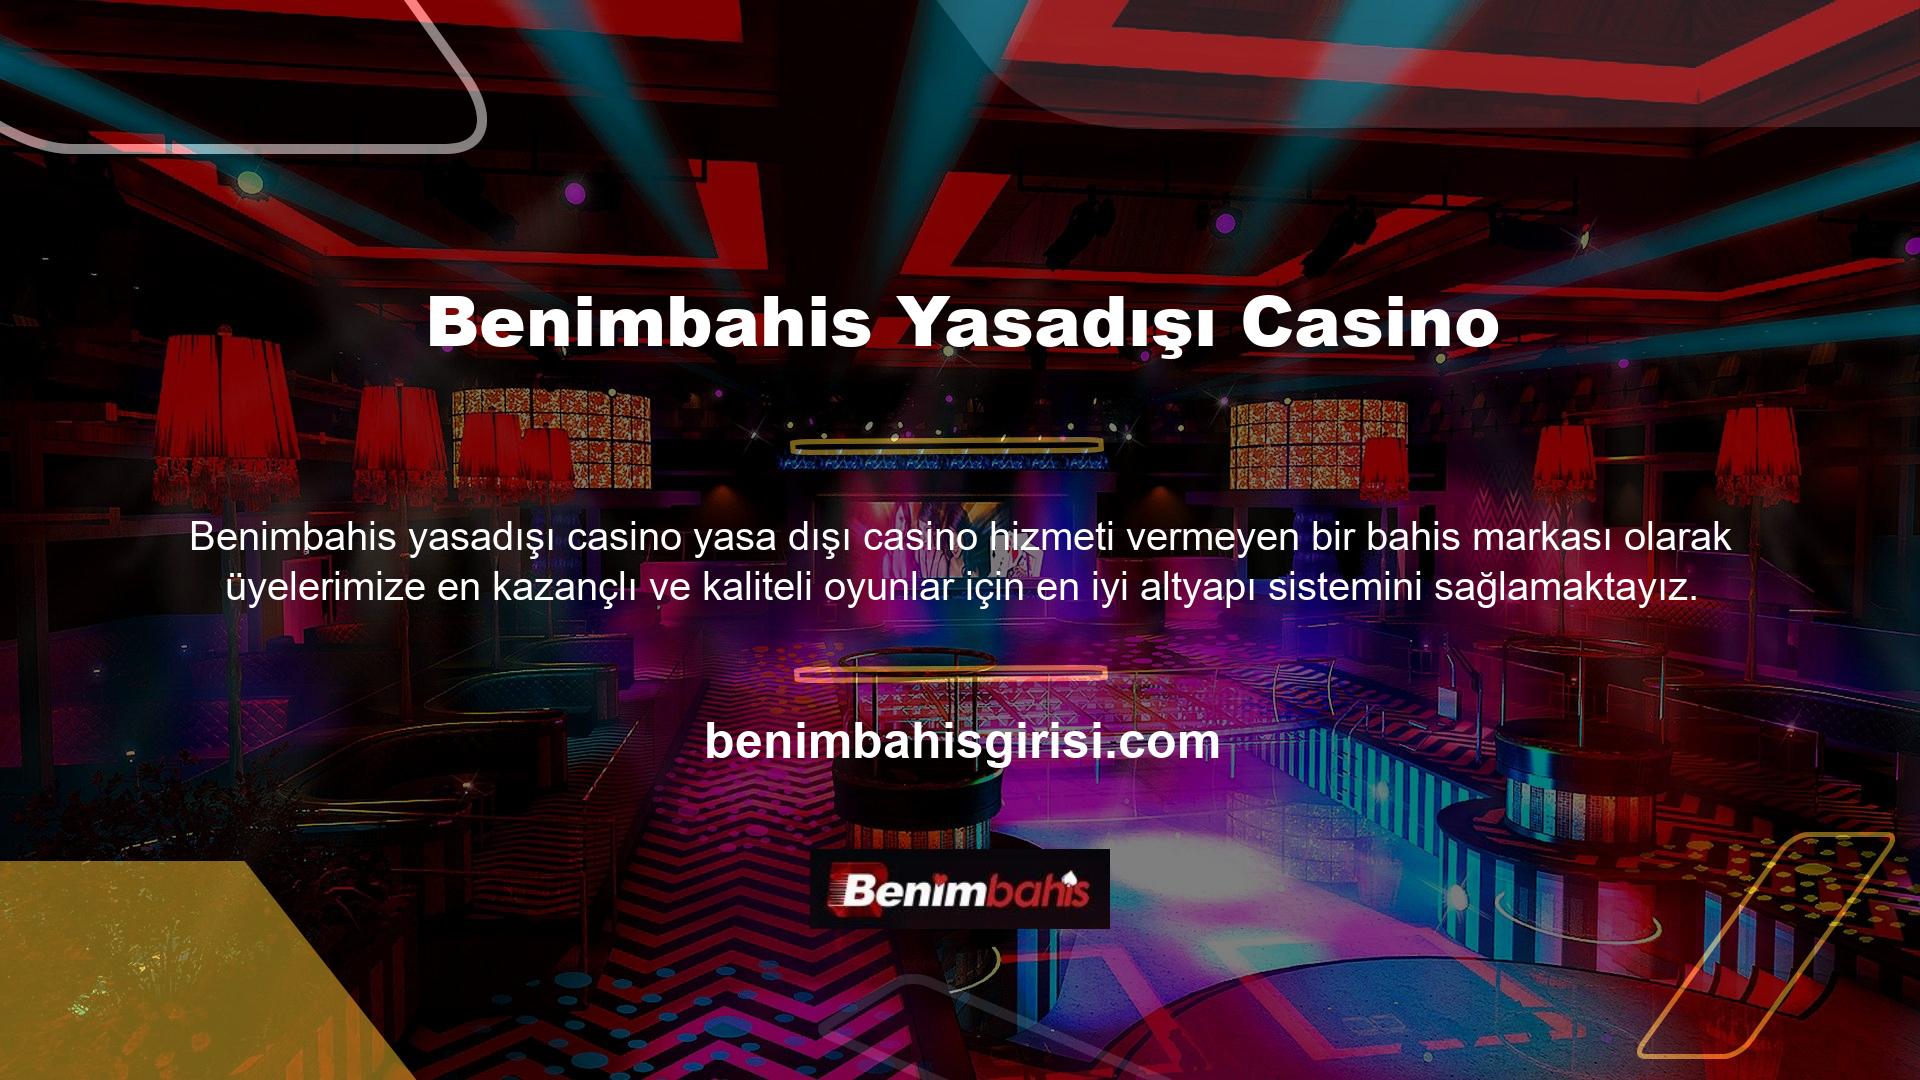 Siteye üye olan kullanıcılar Benimbahis yasa dışı casino üyelik oyun seçeneklerinden faydalanabilmektedir